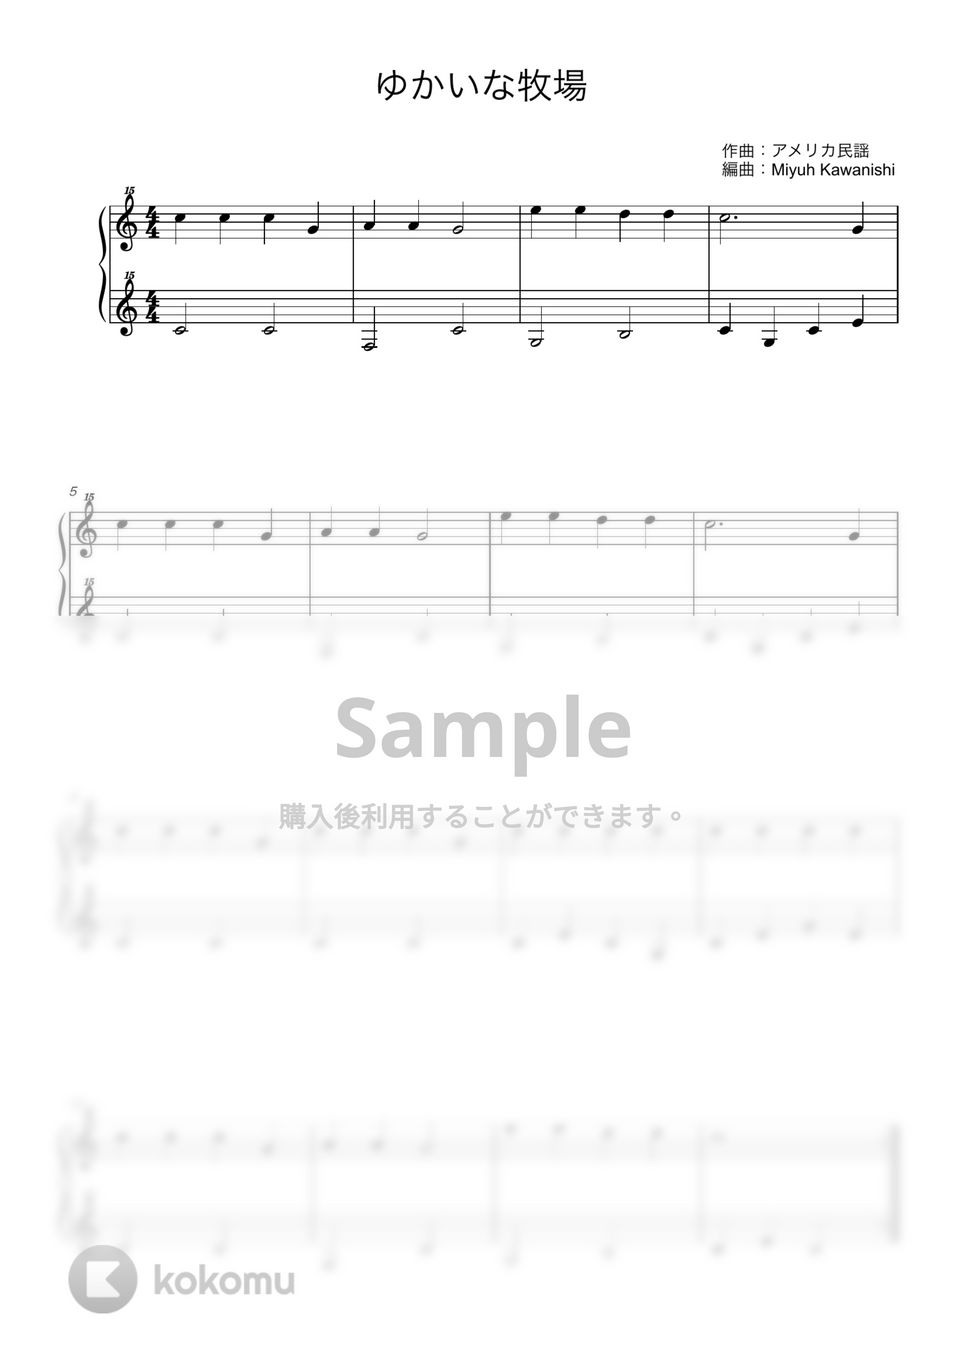 アメリカ民謡 - ゆかいな牧場 (トイピアノ / 25鍵盤 / 童謡) by 川西三裕